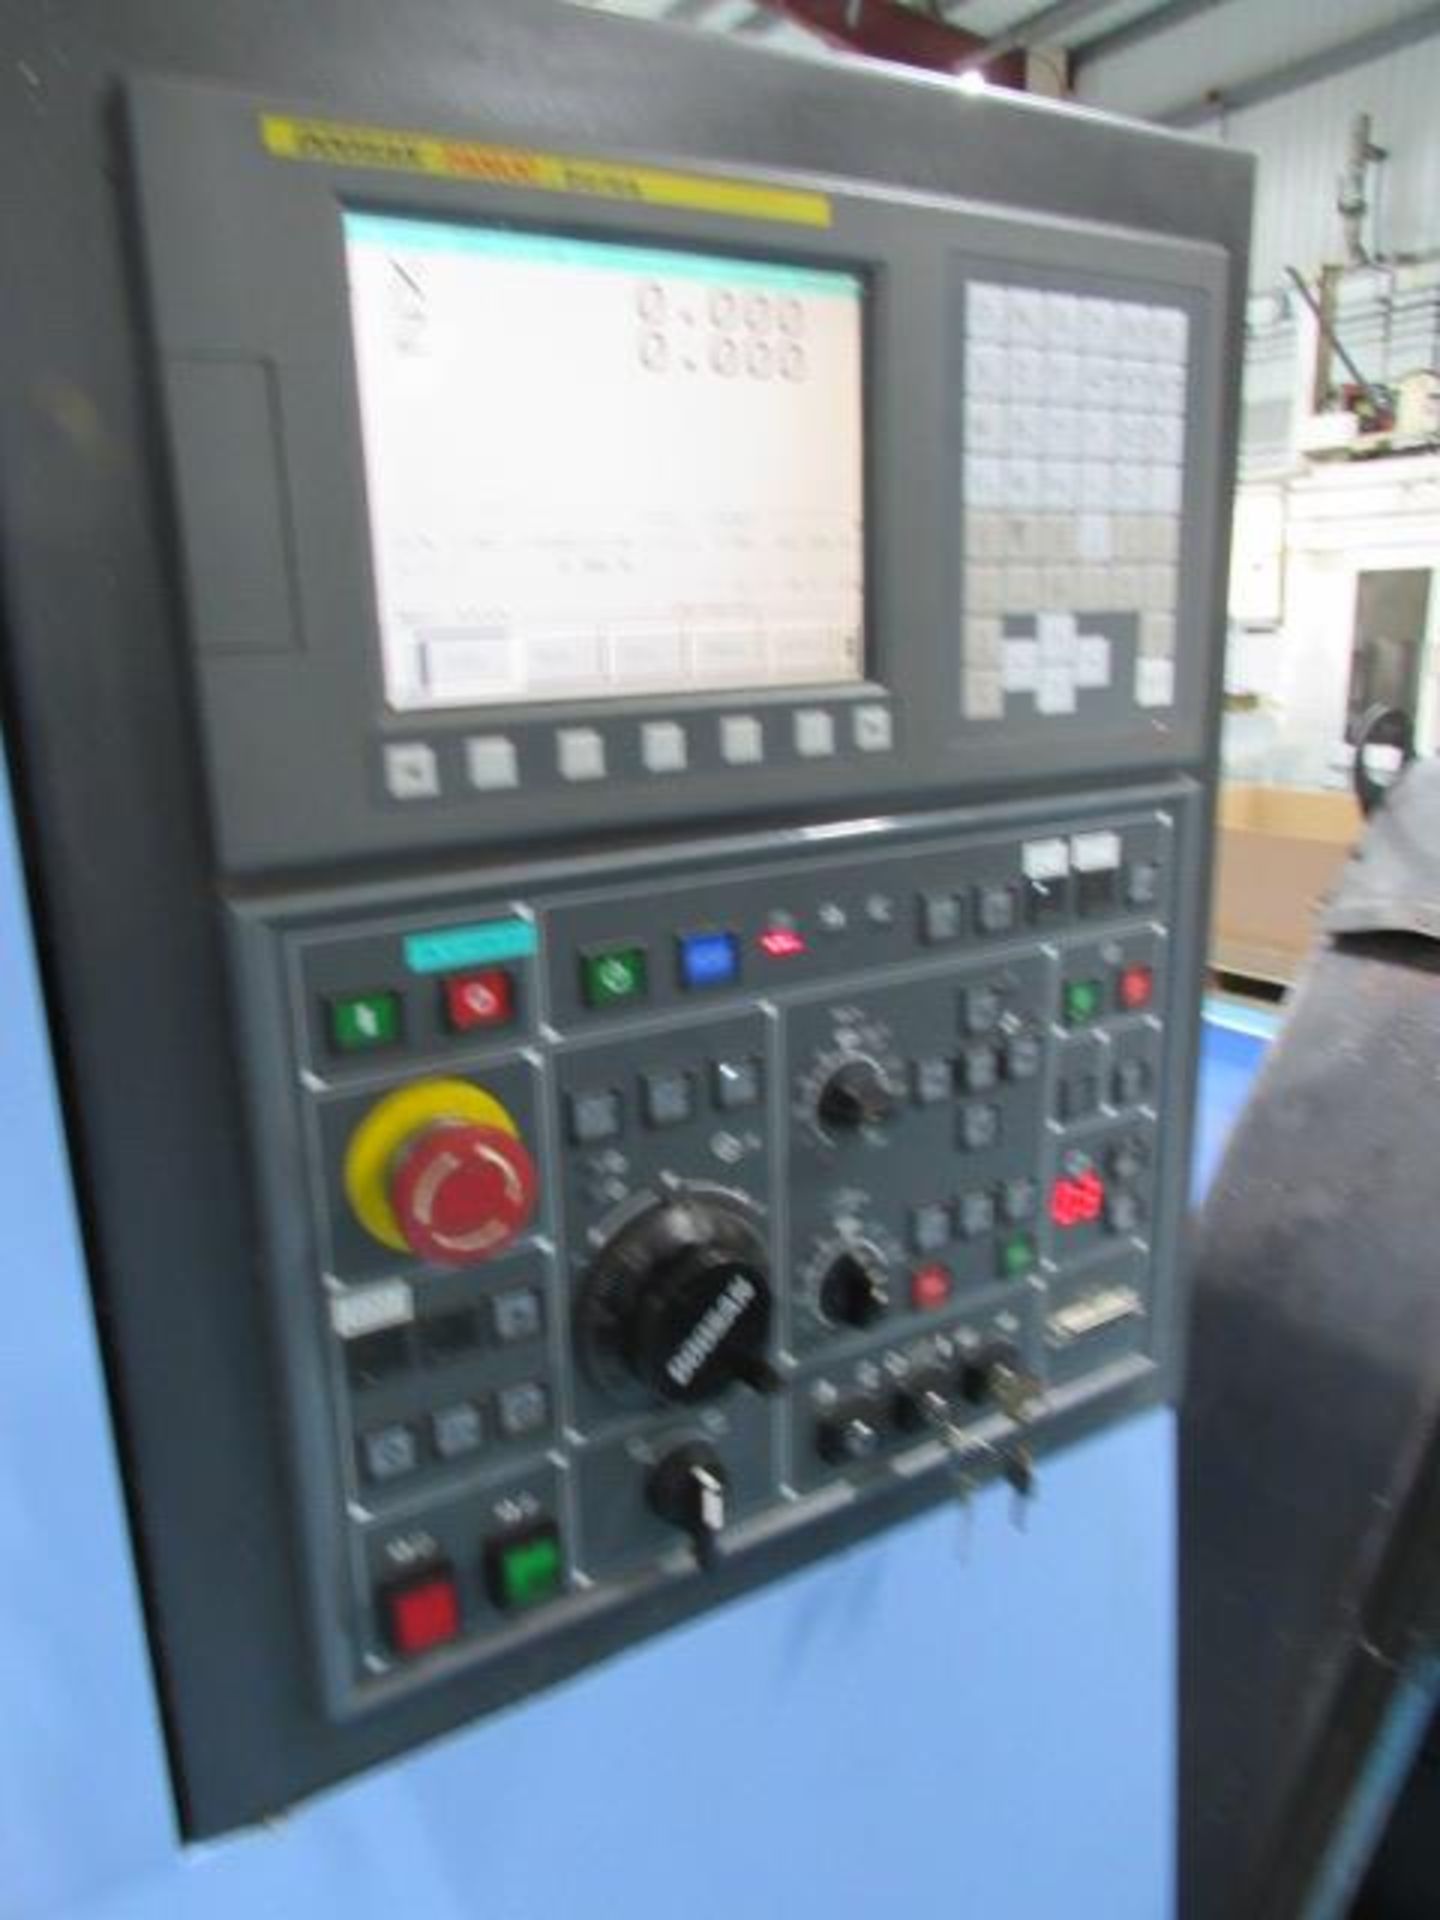 Doosan Lynx 220 B/C CNC Turning Center - Image 7 of 8